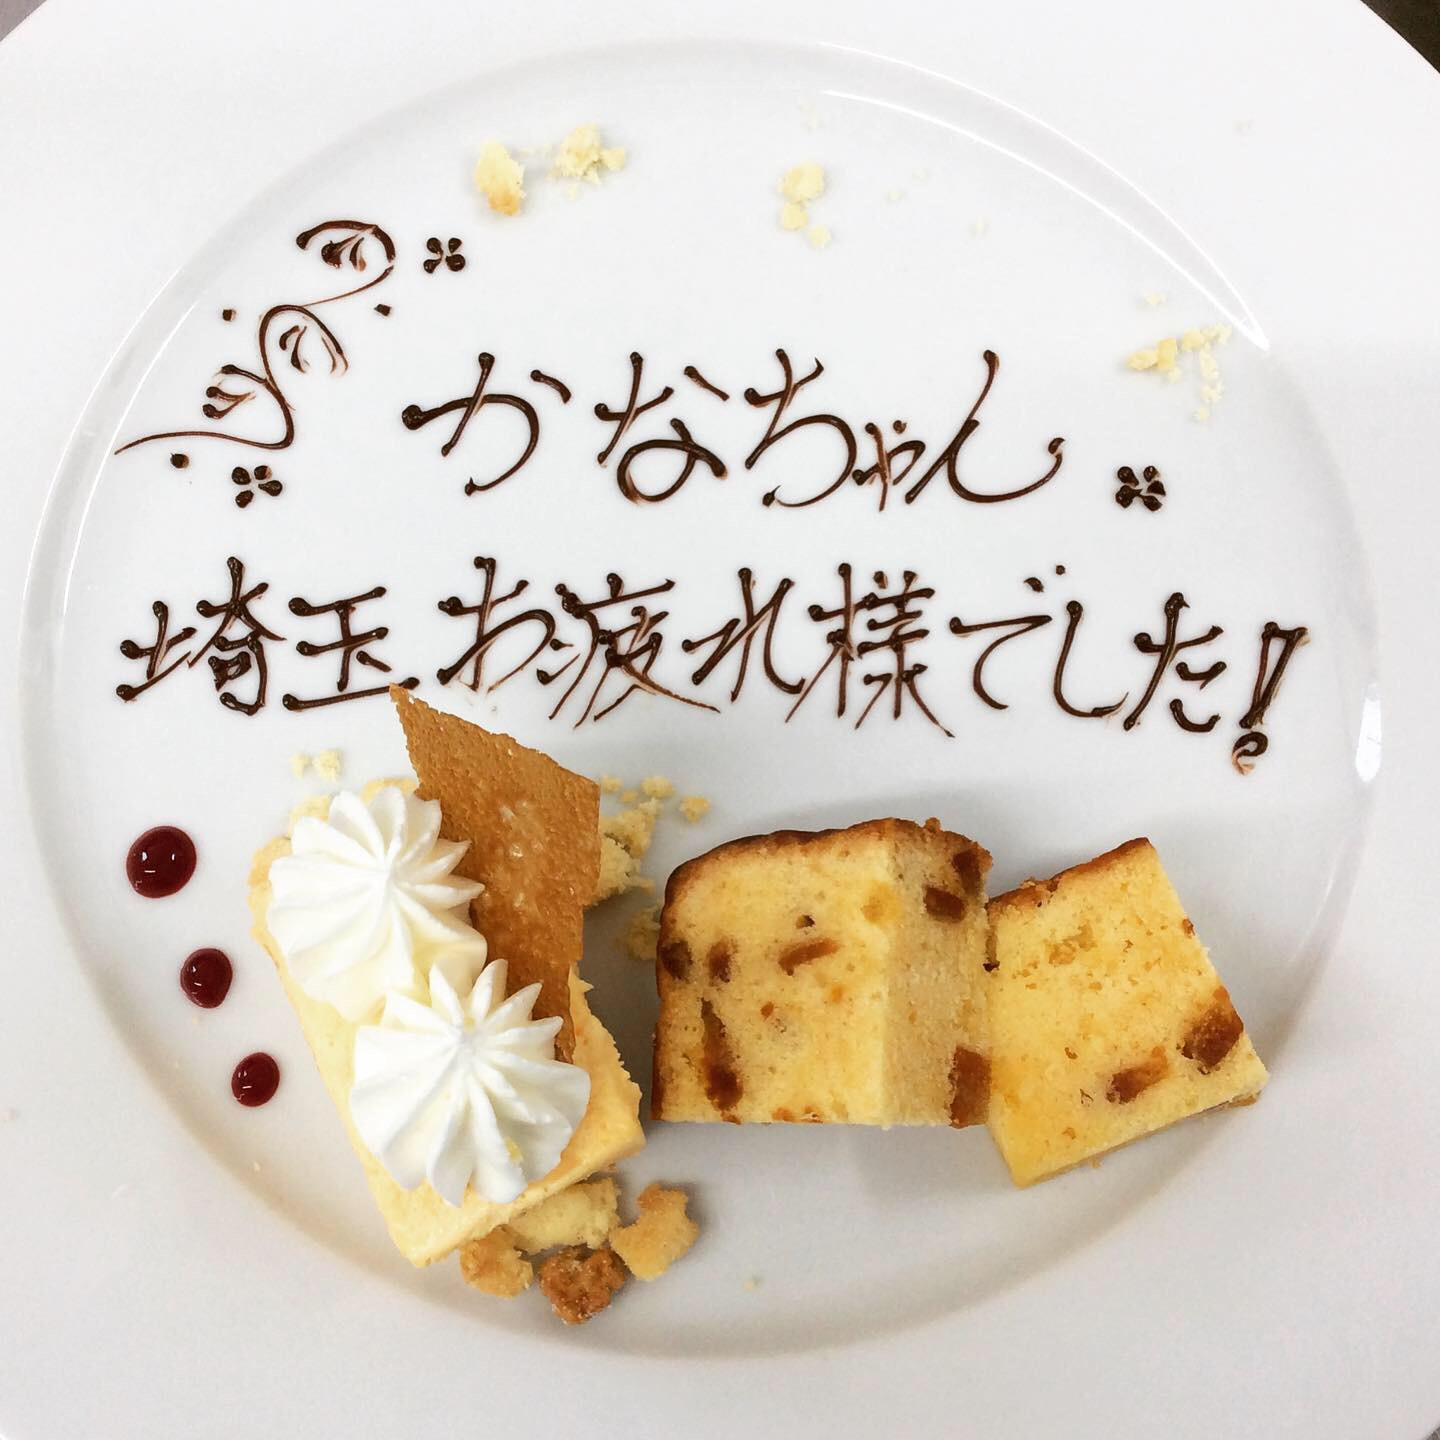 お祝いプレート メッセージ承ります 熊谷のイタリアンレストランが掲載するブログページをご覧ください